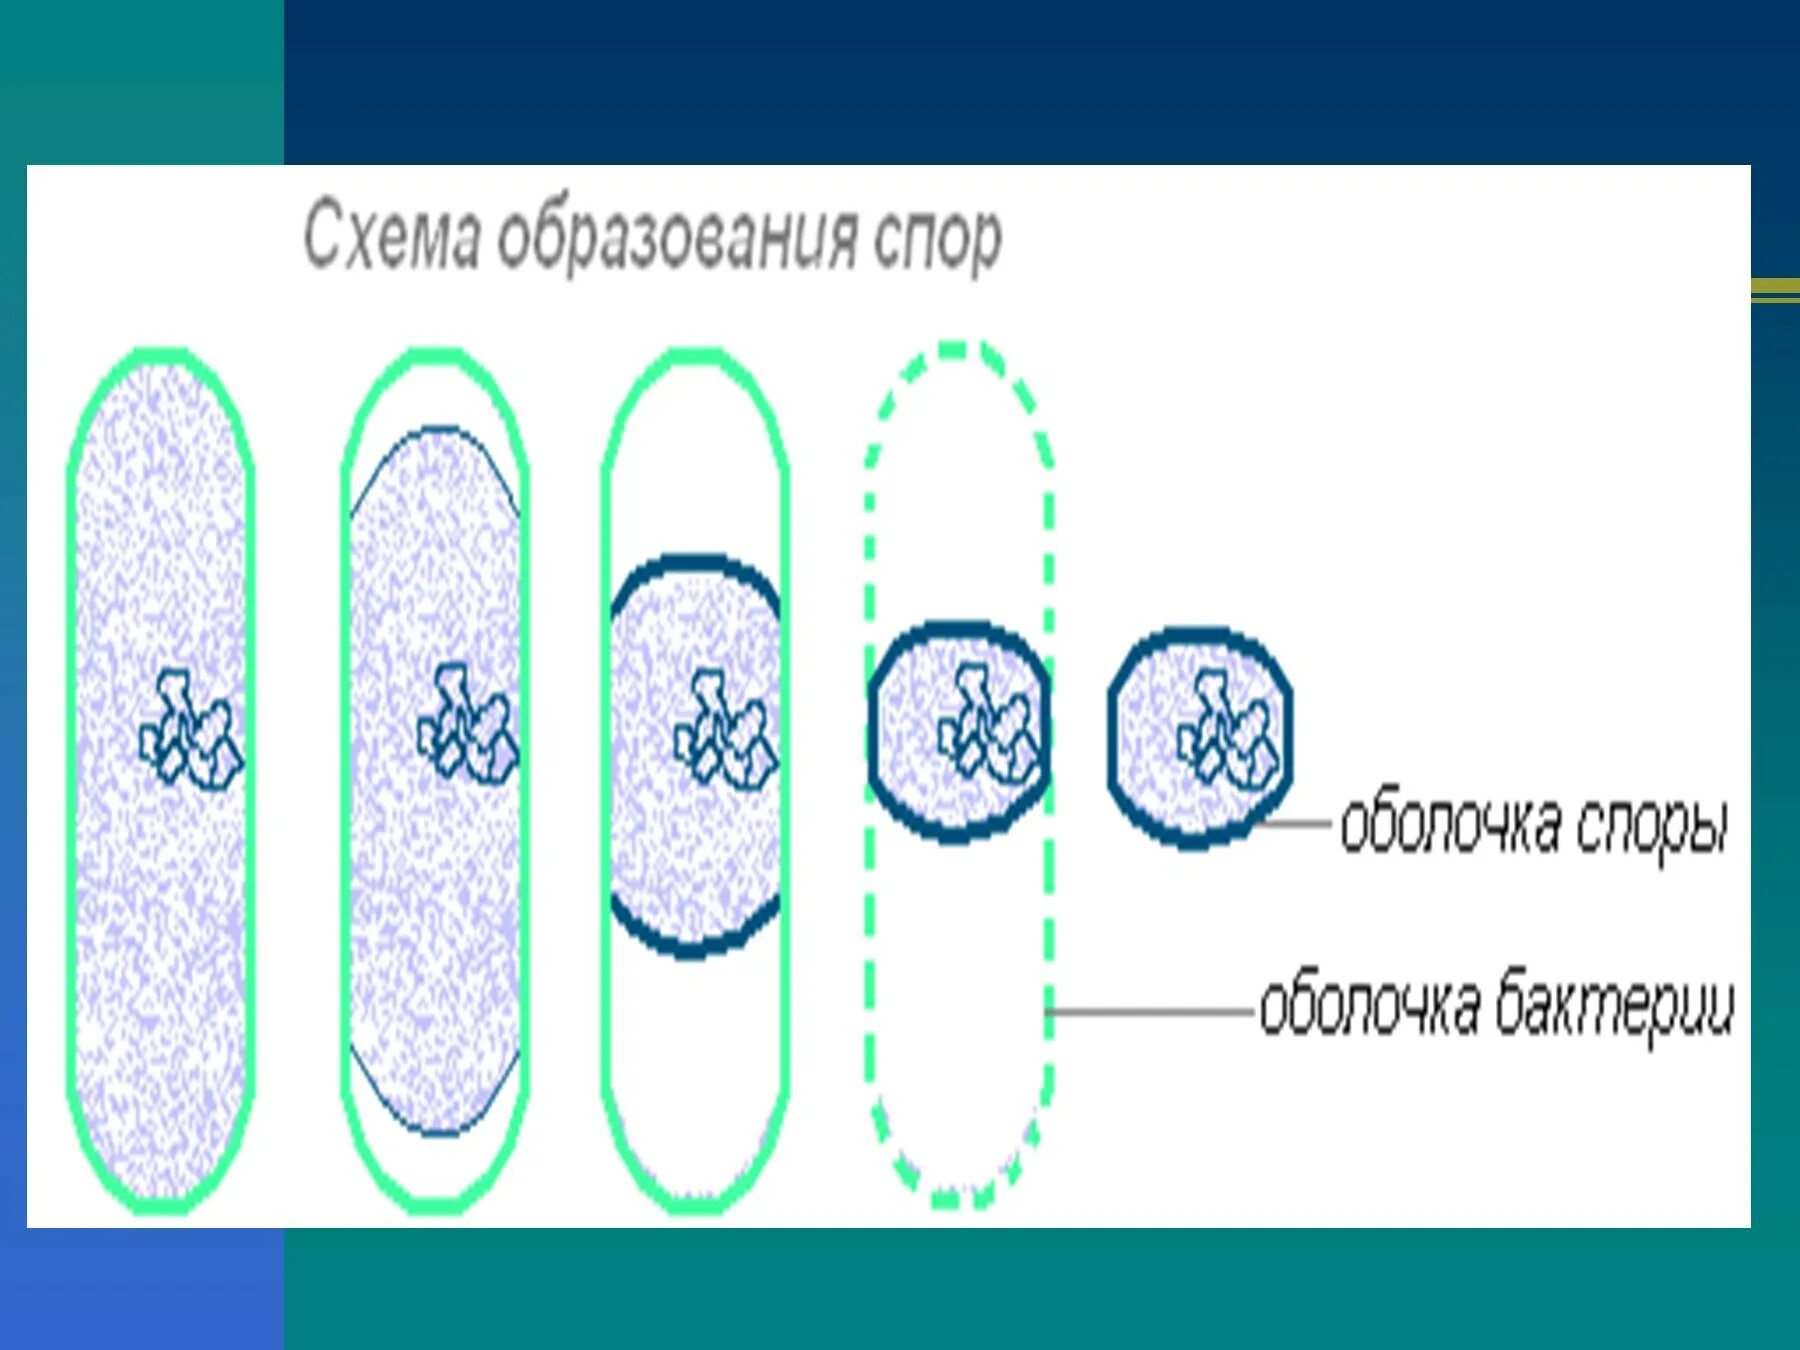 Споры прокариот. Схема образования спор у бактерий. Спорообразование бактериальной клетки. Схема спорообразования у бактерий. Споры и спорообразование у бактерий.